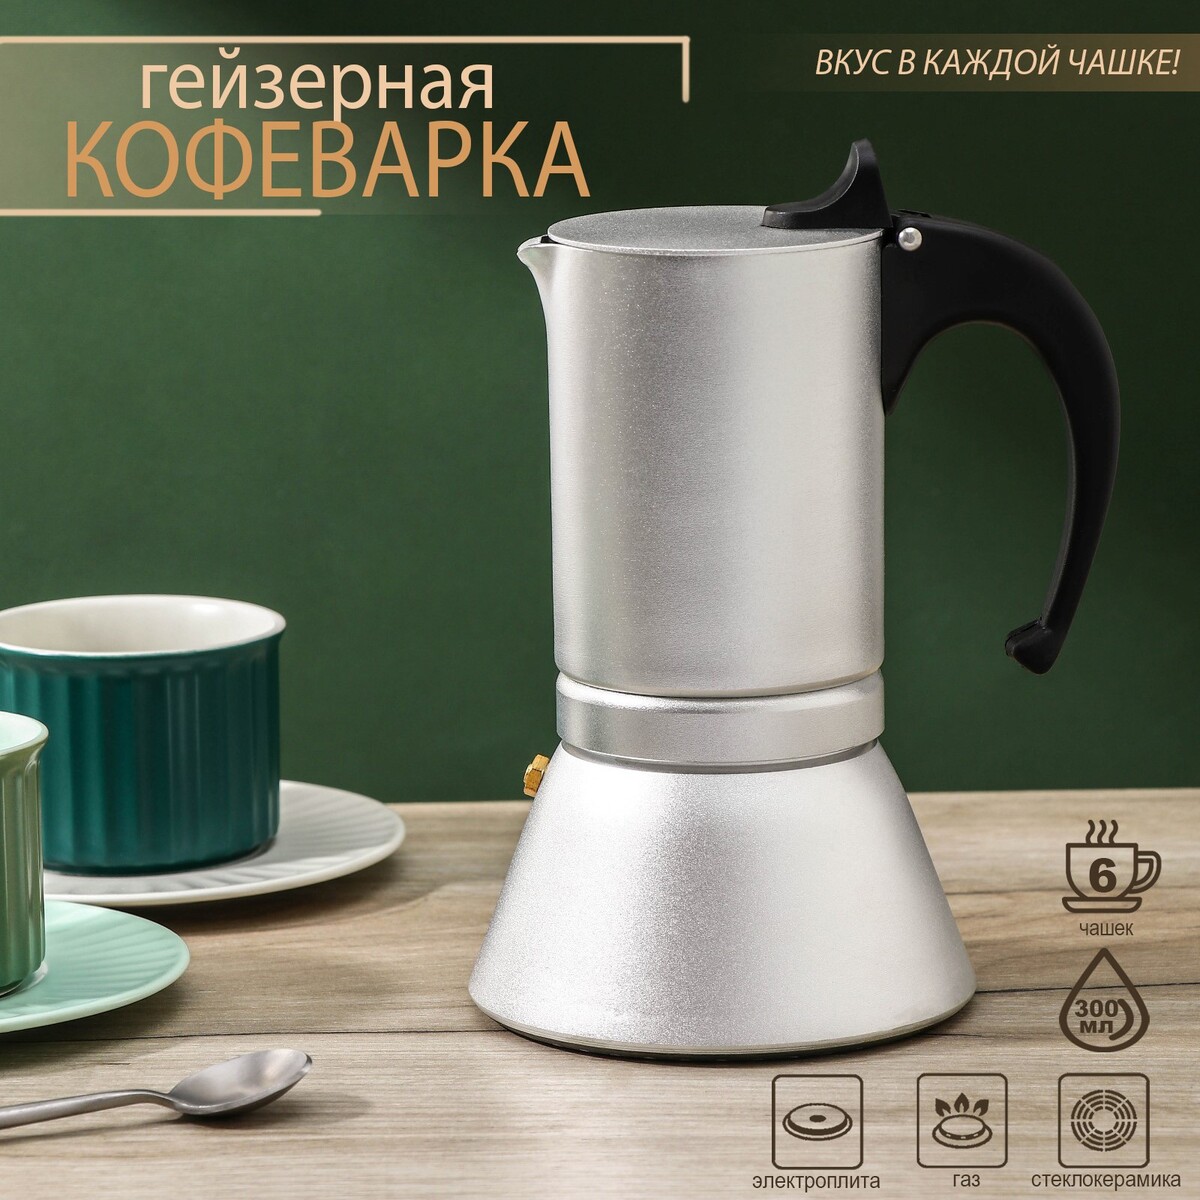 Кофеварка гейзерная magistro salem, на 6 чашек, 300 мл, индукция кофеварка гейзерная magistro moka на 6 чашек 300 мл